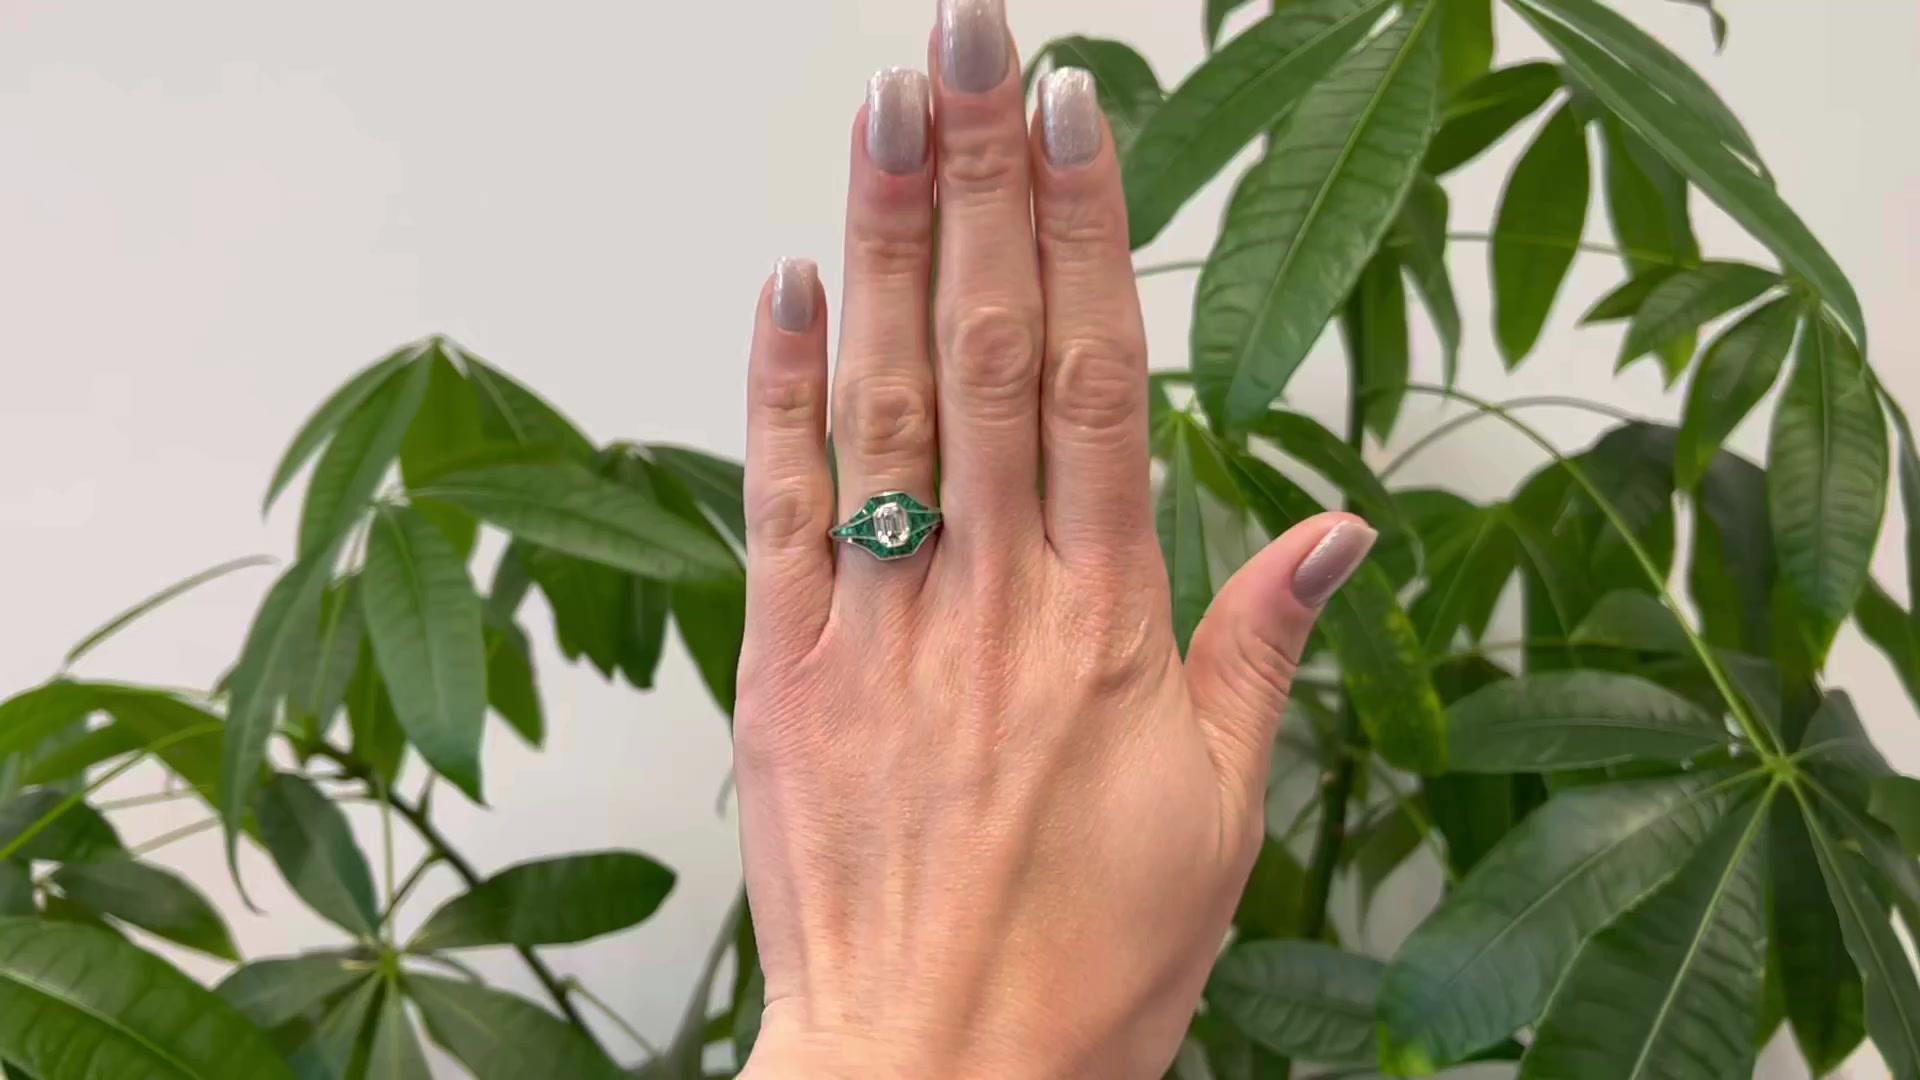 Ein Art Deco inspiriert 1,04 Karat Smaragdschliff Diamant und Smaragd Platin Ring. Mit einem Diamanten im Smaragdschliff mit einem Gewicht von 1,04 Karat, Farbe F, Reinheit VVS2. Gefertigt aus 26 Smaragden im Kaliberschliff mit einem Gesamtgewicht